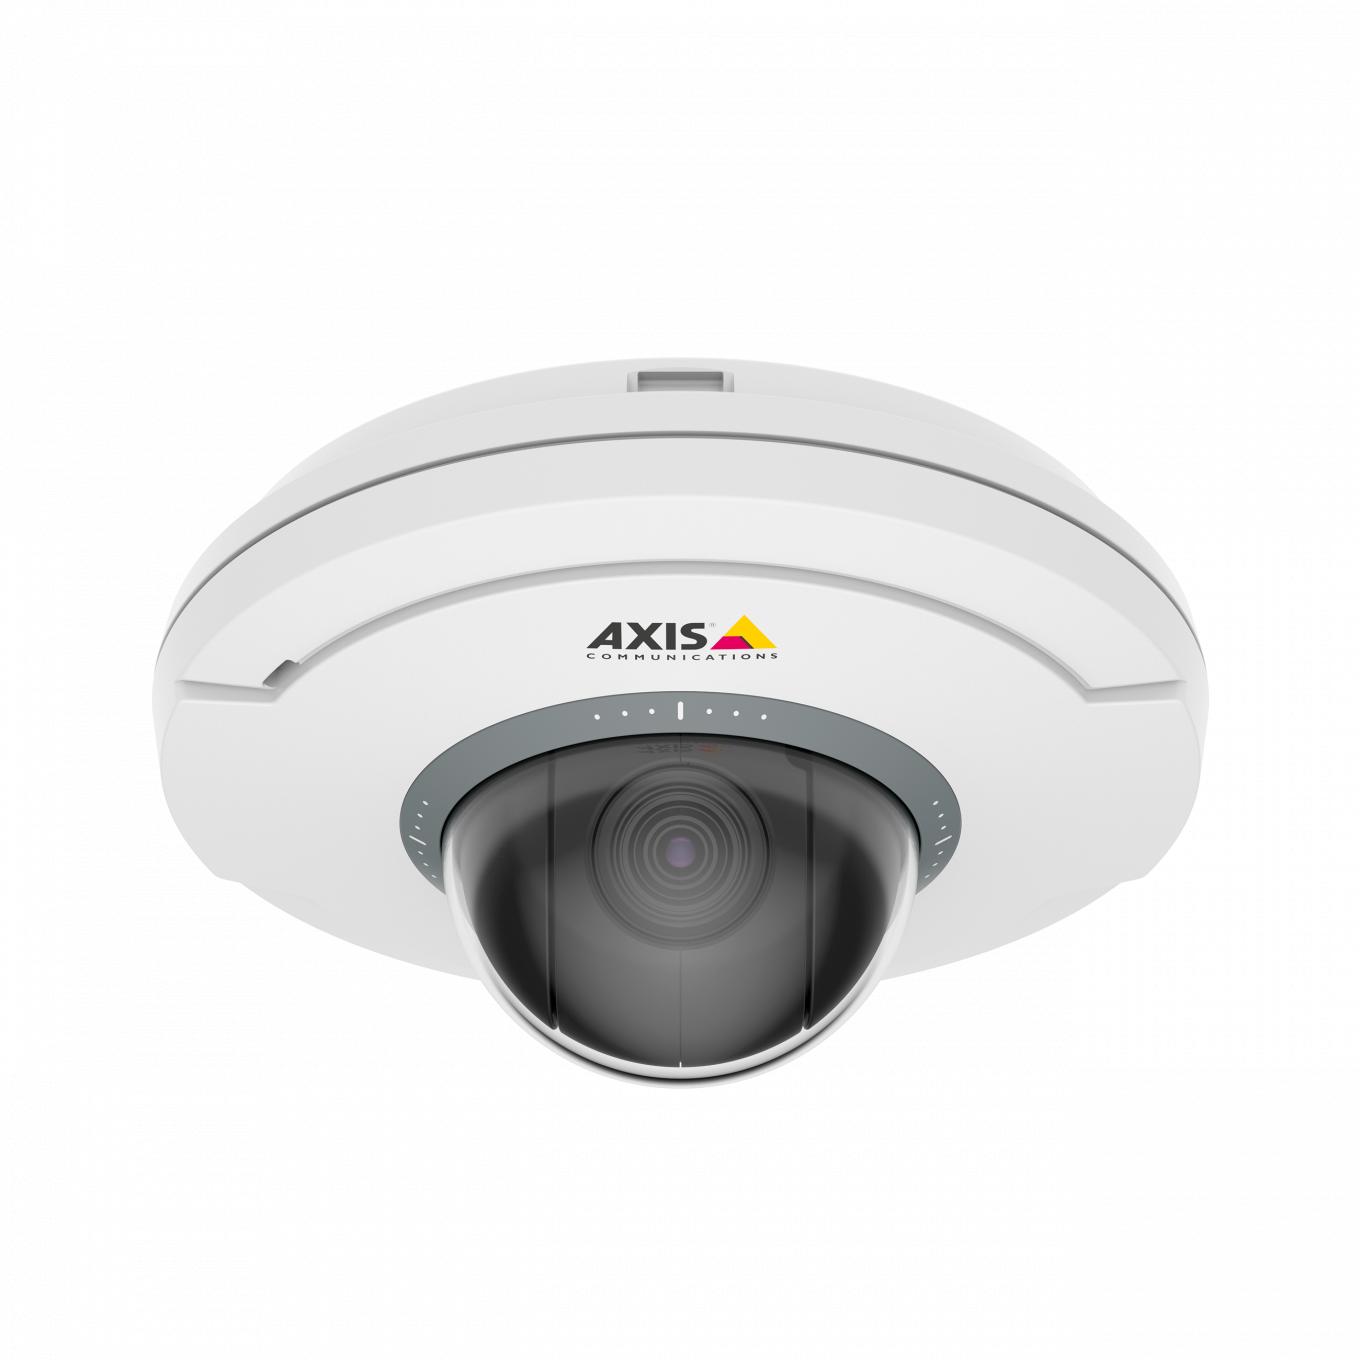 La telecamera AXIS M5075 bianca e nera con il logo AXIS è angolata sul lato anteriore